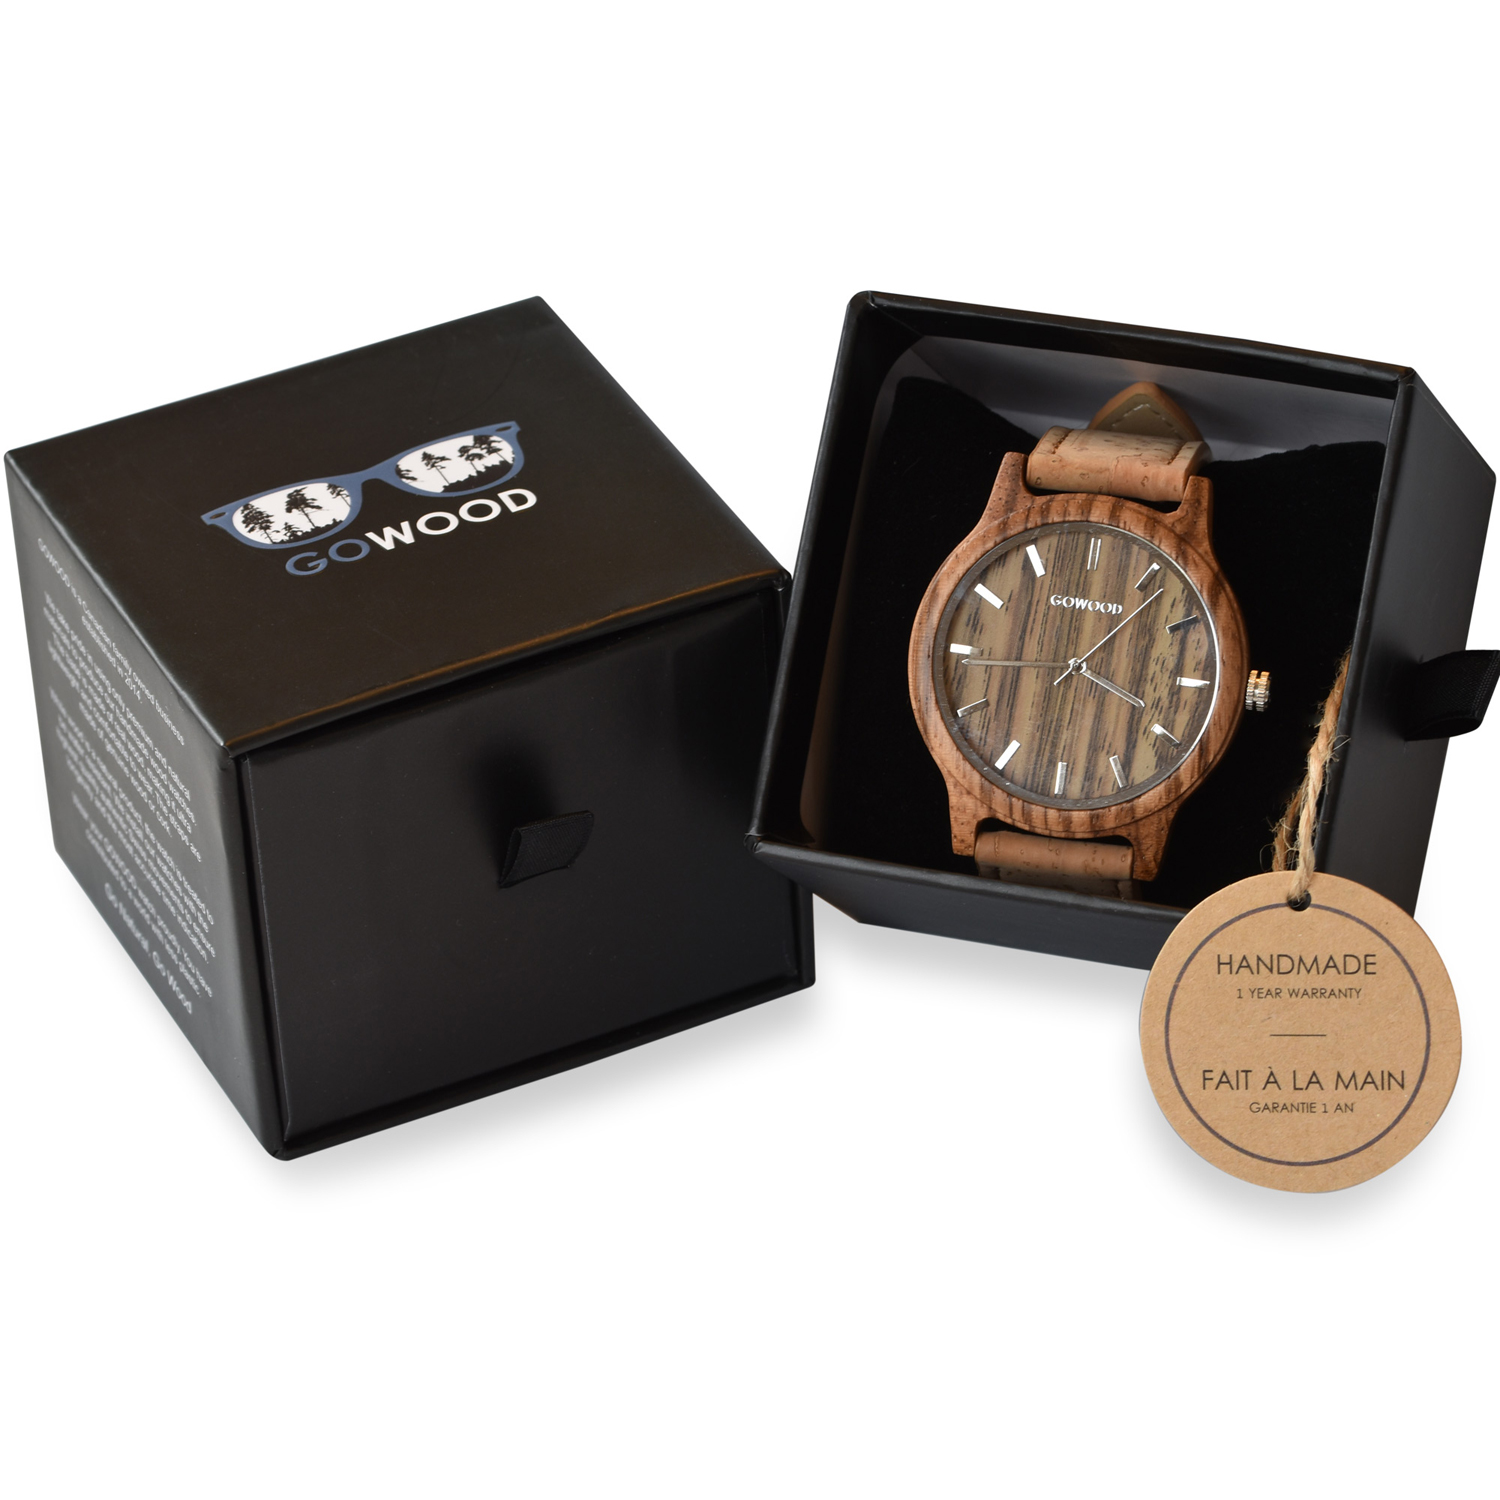 Zebra Wood Watch in package